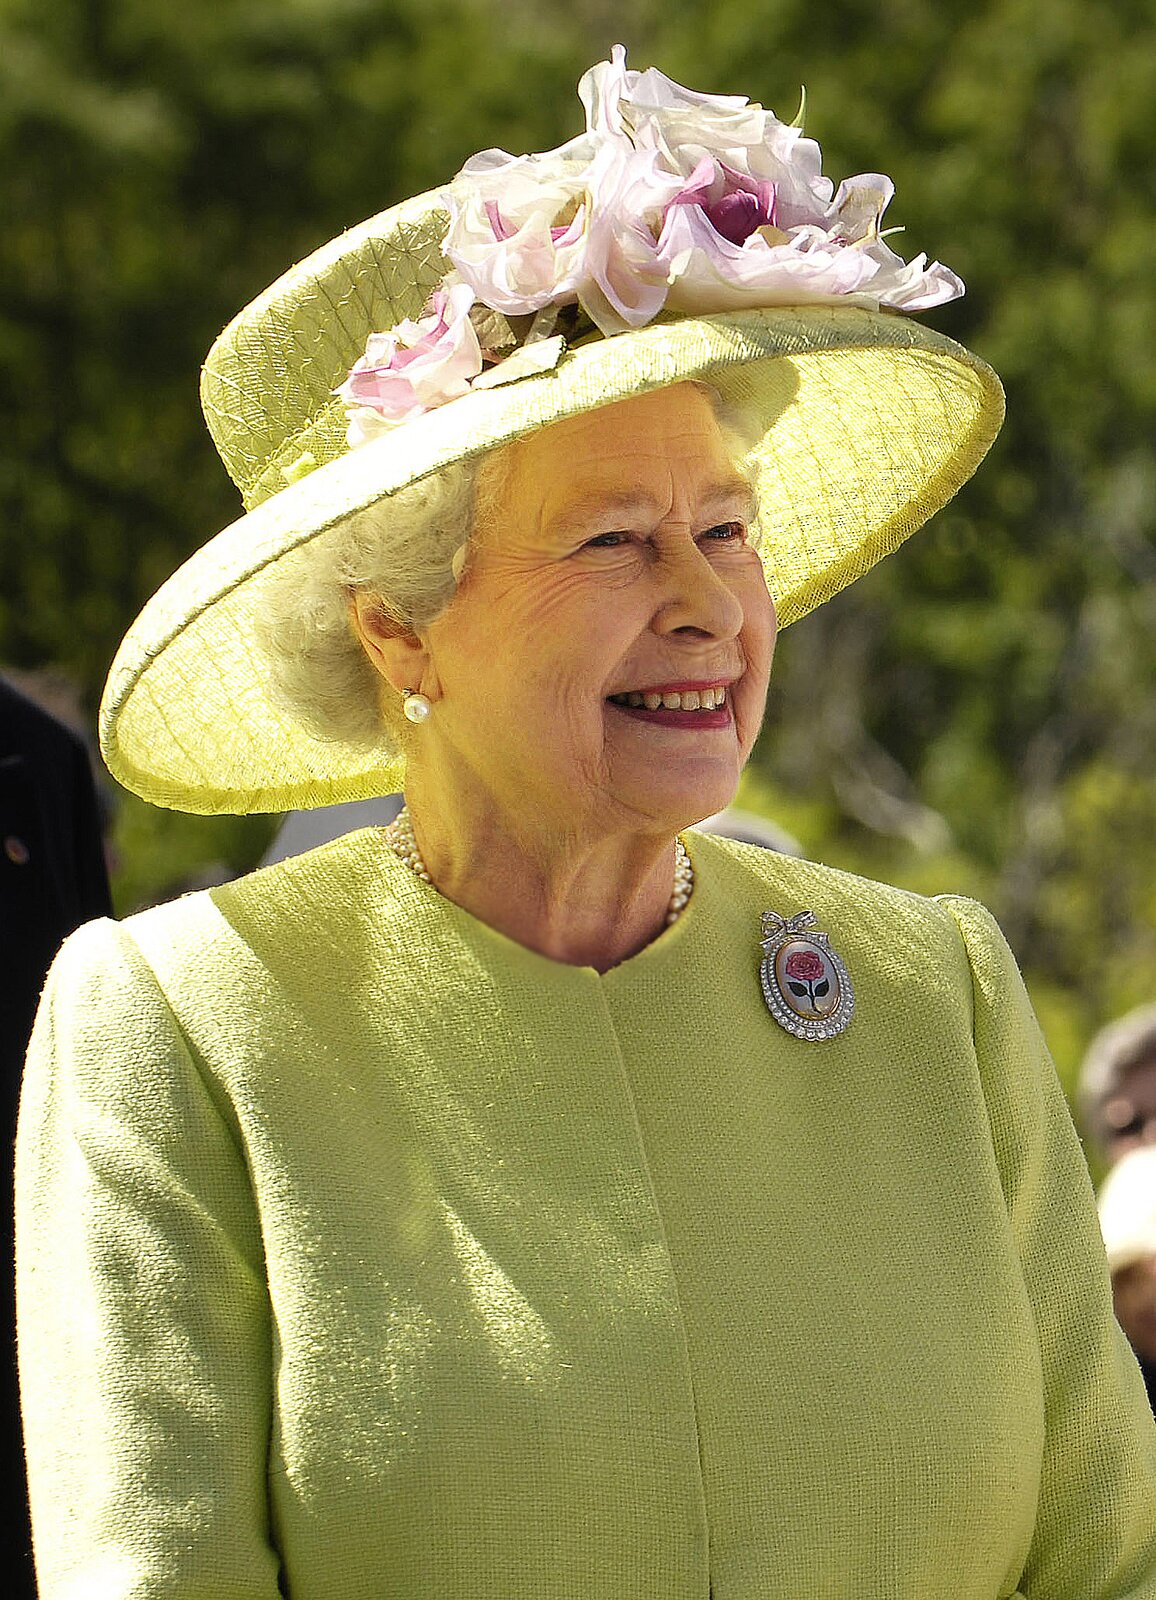 Zdjęcie przedstawia starszą, siwowłosą kobietę. To królowa Wielkiej Brytanii Elżbieta II. Jest ubrana w garsonkę, a na głowie ma kapelusz z dużym rondem, do którego dopięte są kwiaty.